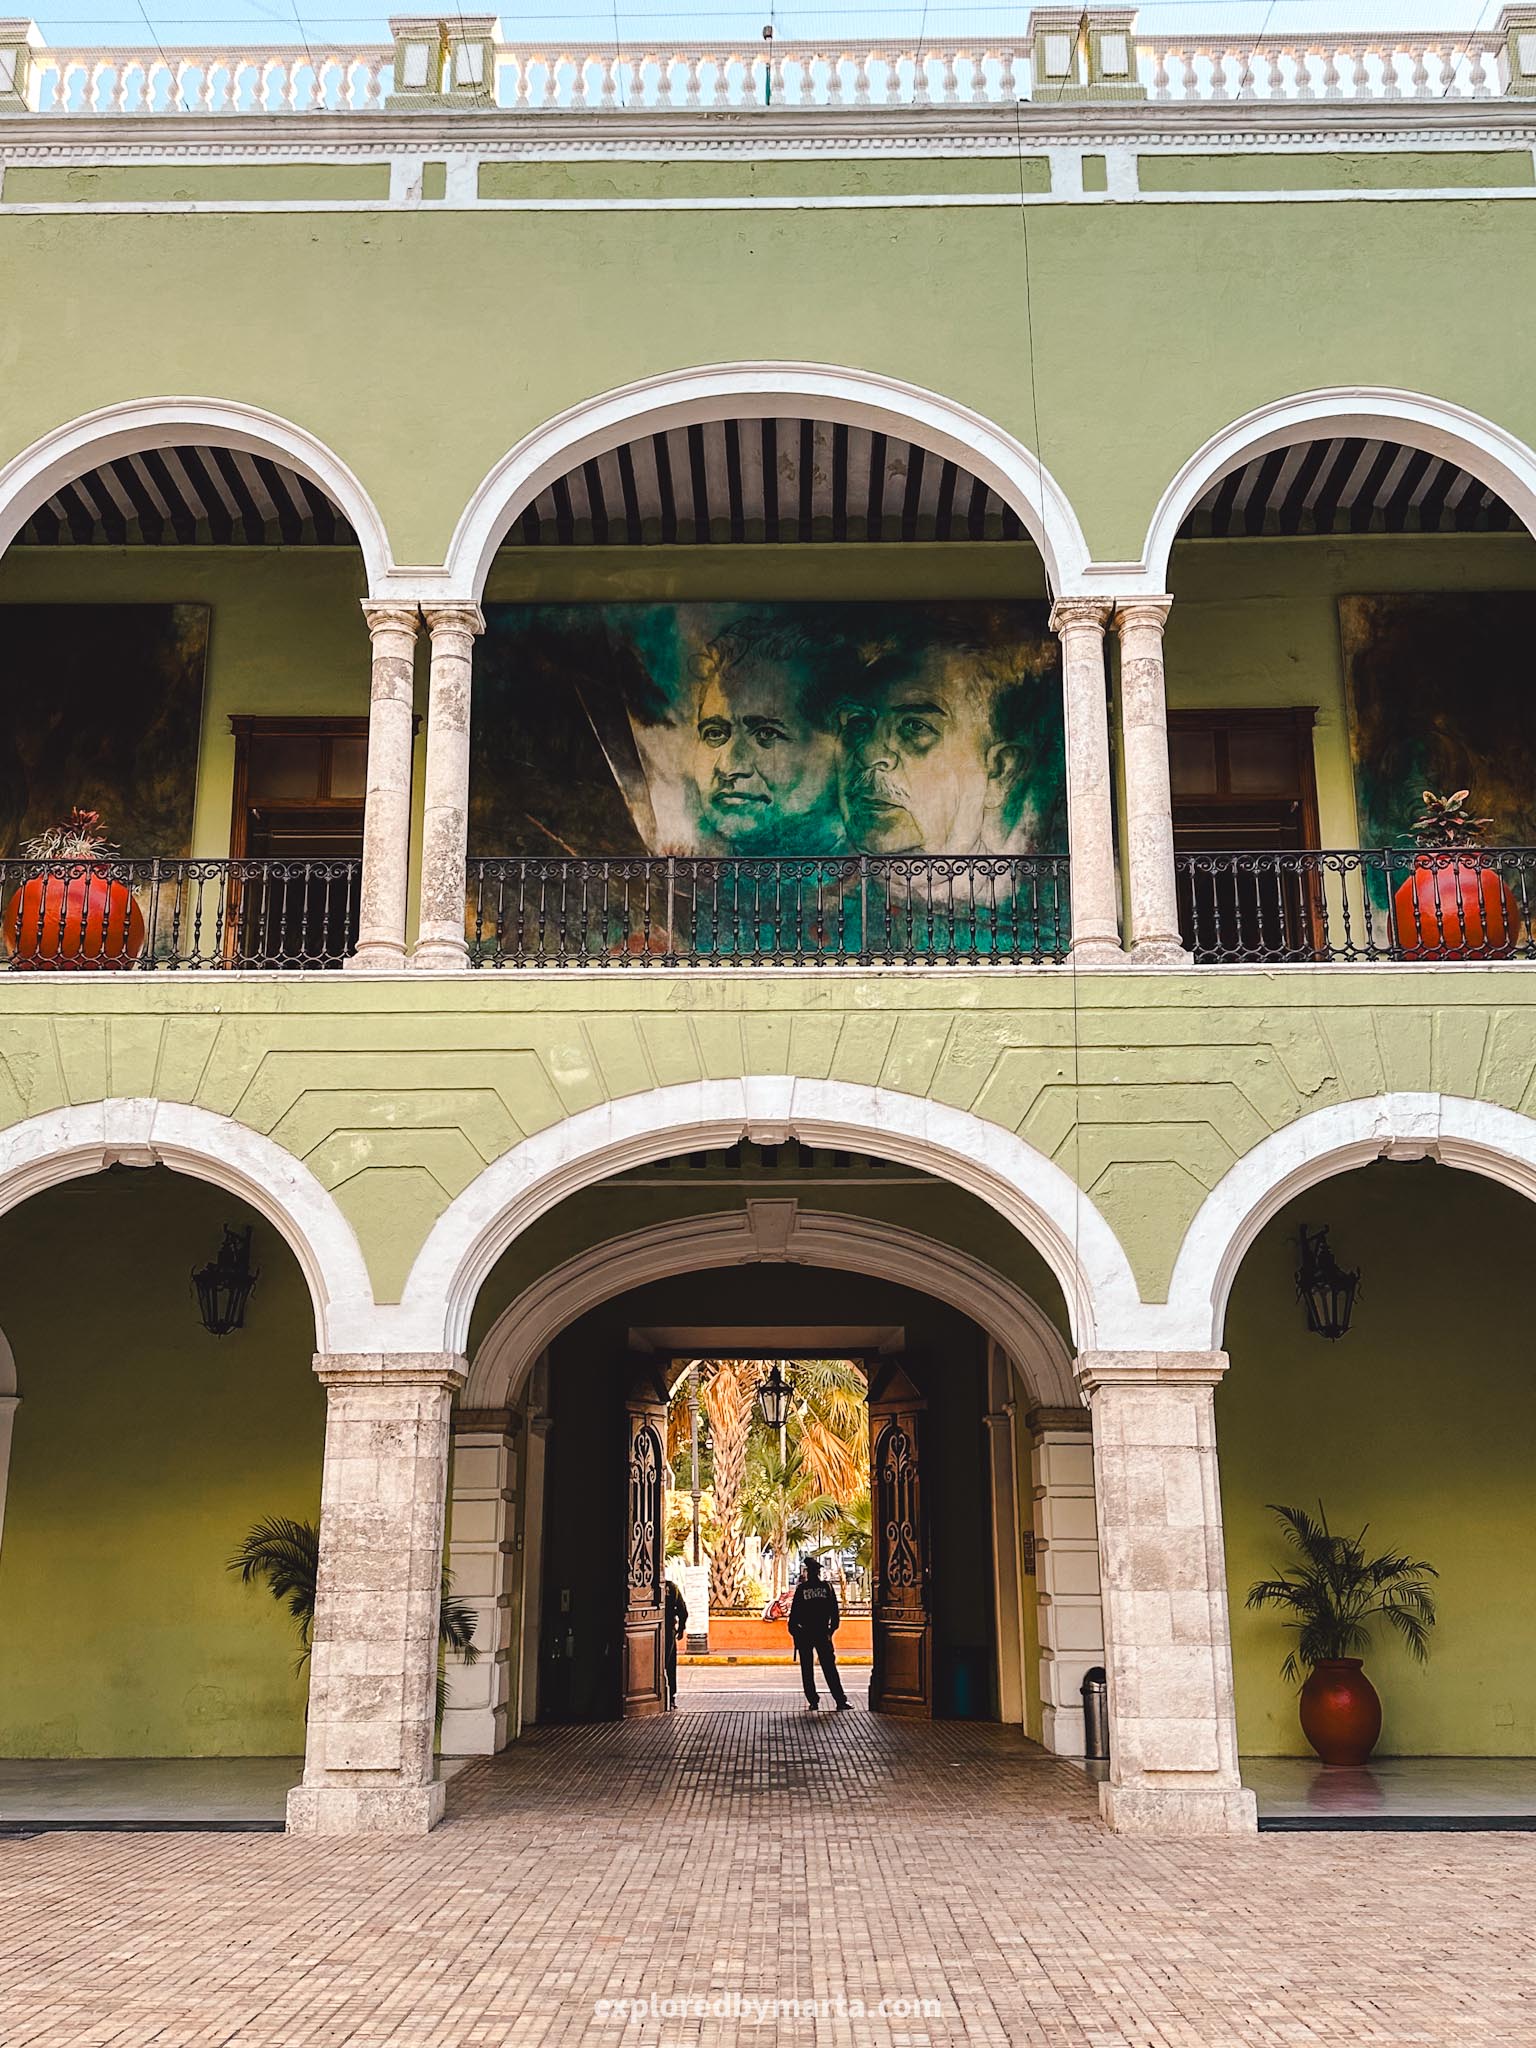 Merida, Mexico - Palacio de Gobierno del Estado de Yucatán - a green 19th century government building with arcaded courtyard and murals on the walls